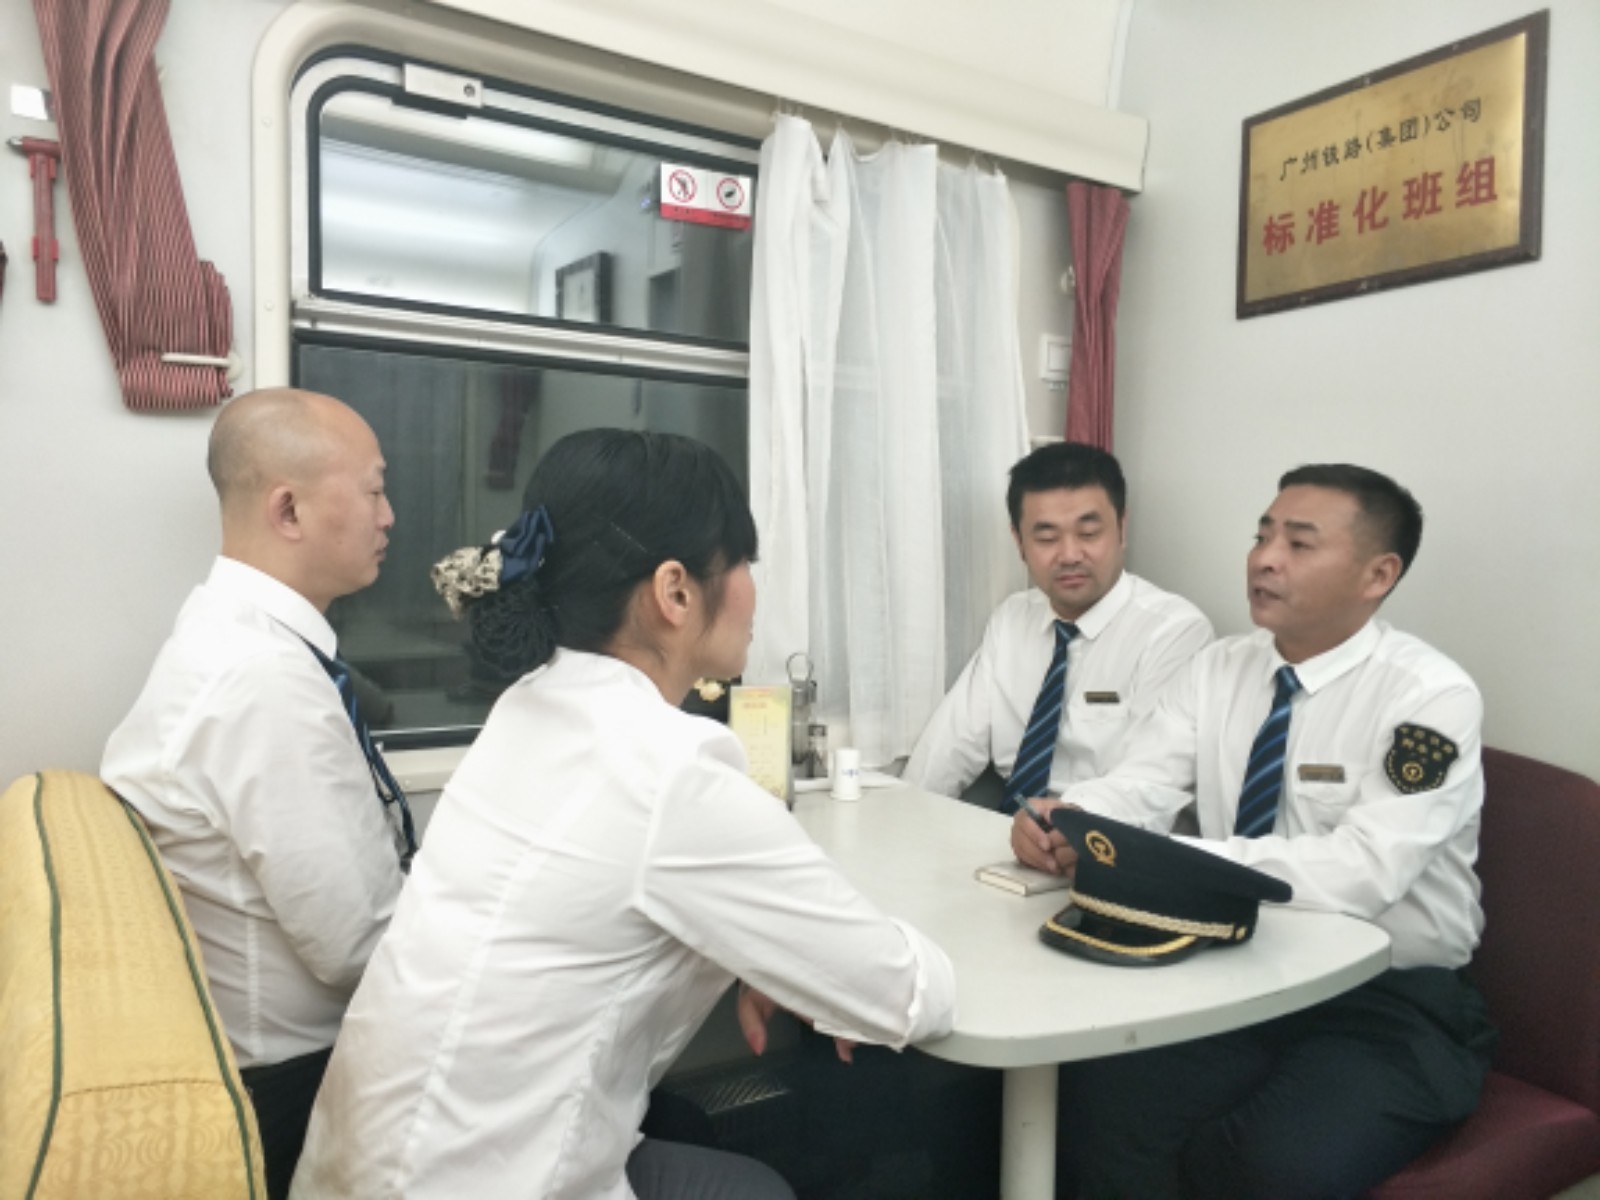 列车救援:乘客突发疾病 多方火速成立救援组